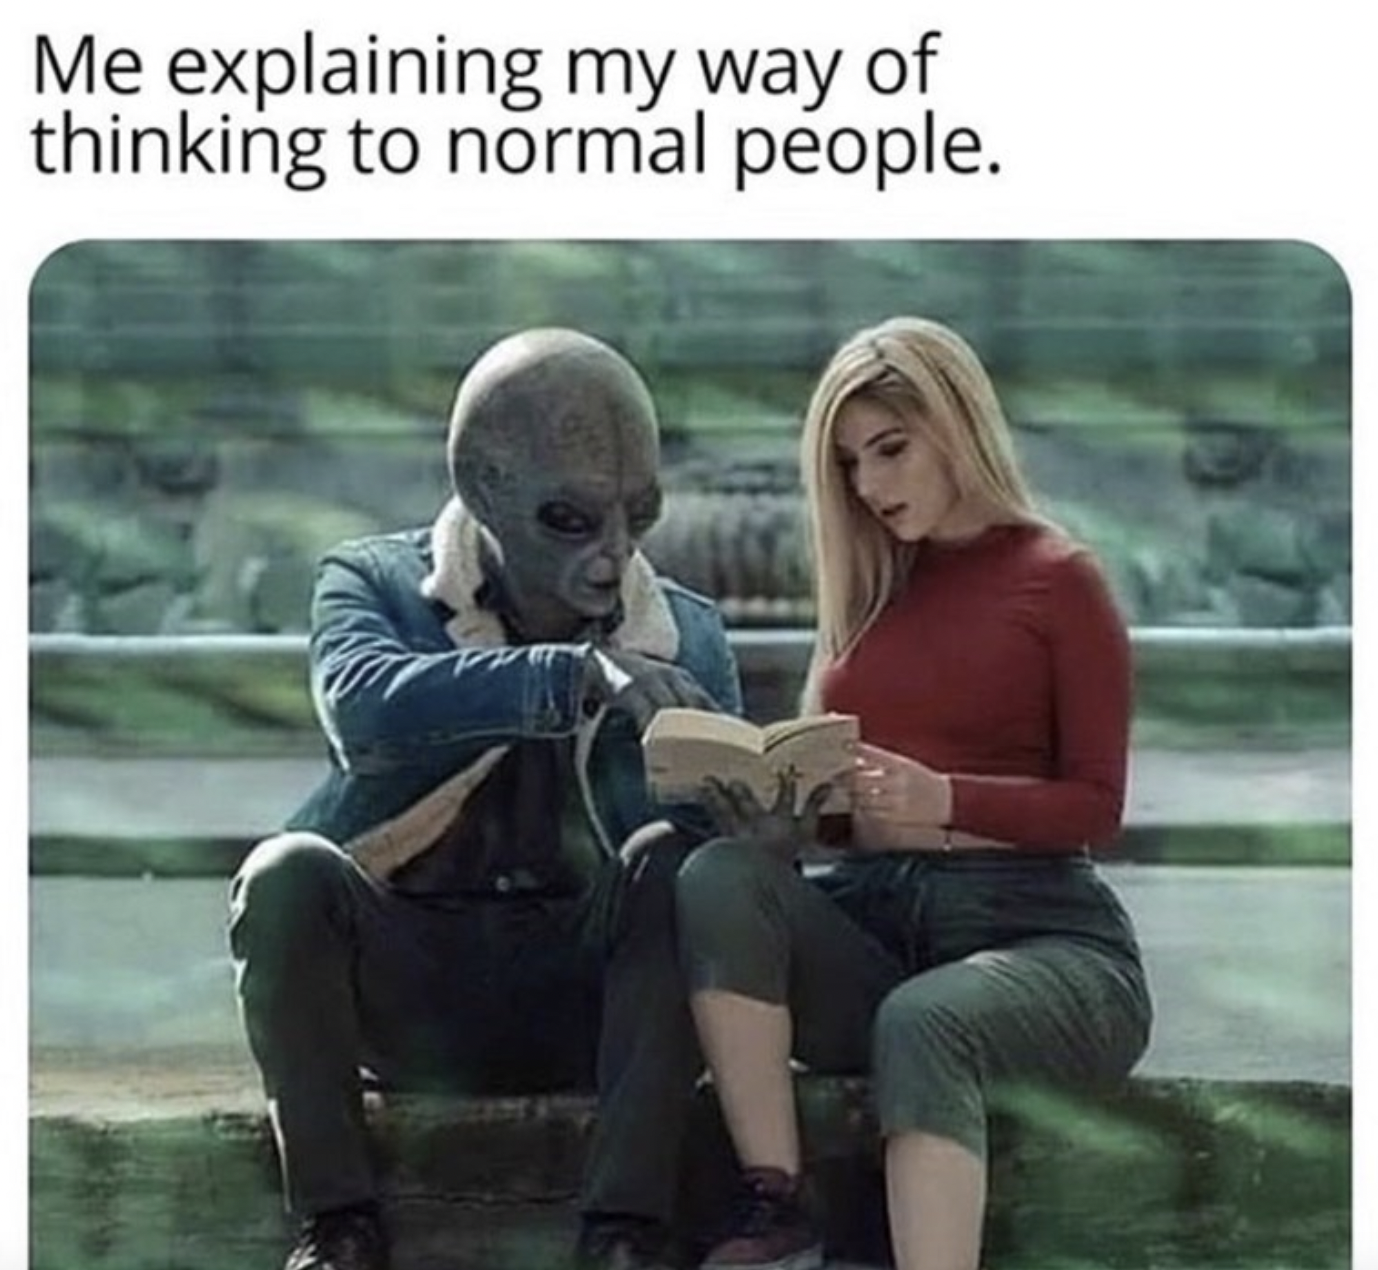 me explaining my way of thinking meme - Me explaining my way of thinking to normal people.